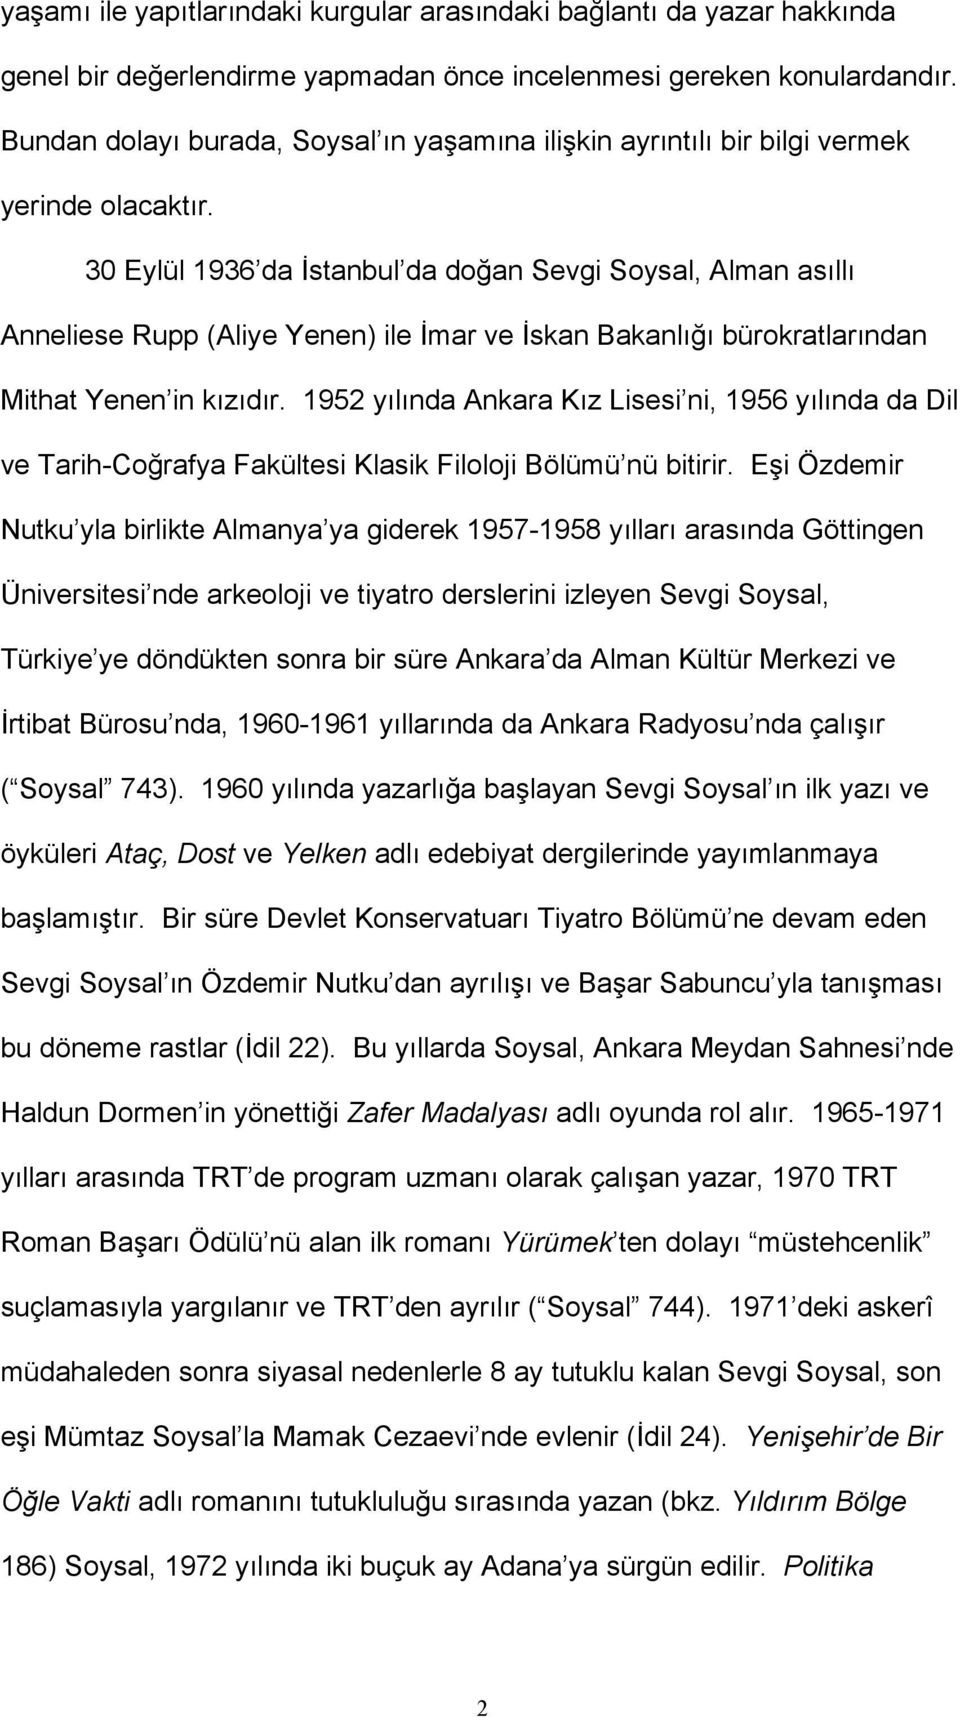 30 Eylül 1936 da İstanbul da doğan Sevgi Soysal, Alman asıllı Anneliese Rupp (Aliye Yenen) ile İmar ve İskan Bakanlığı bürokratlarından Mithat Yenen in kızıdır.